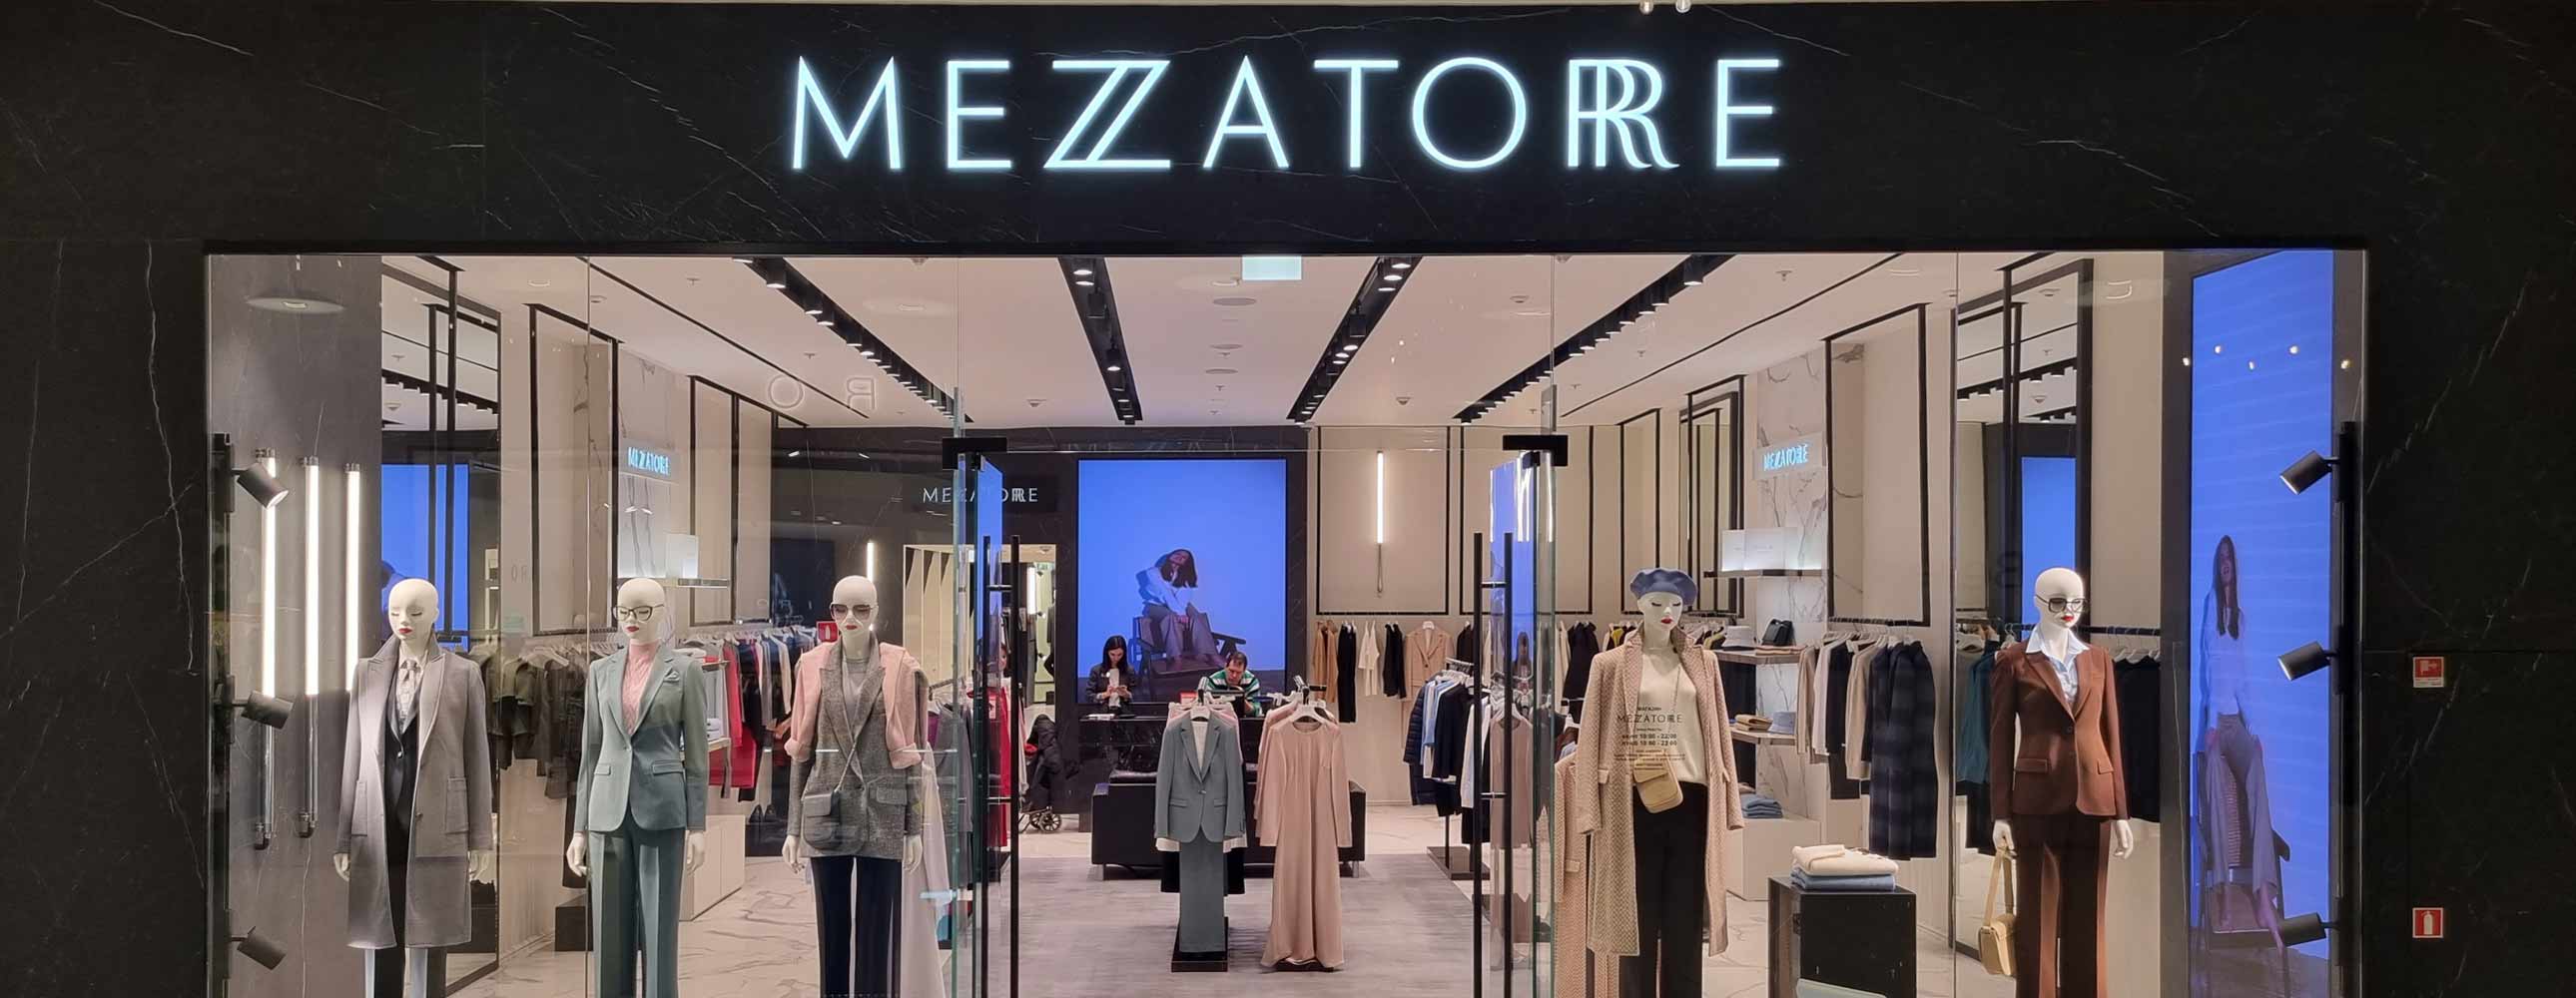 Открылся новый магазин MEZZATORRE в ТЦ Авиапарк - Новости и акции MEZZATORRE